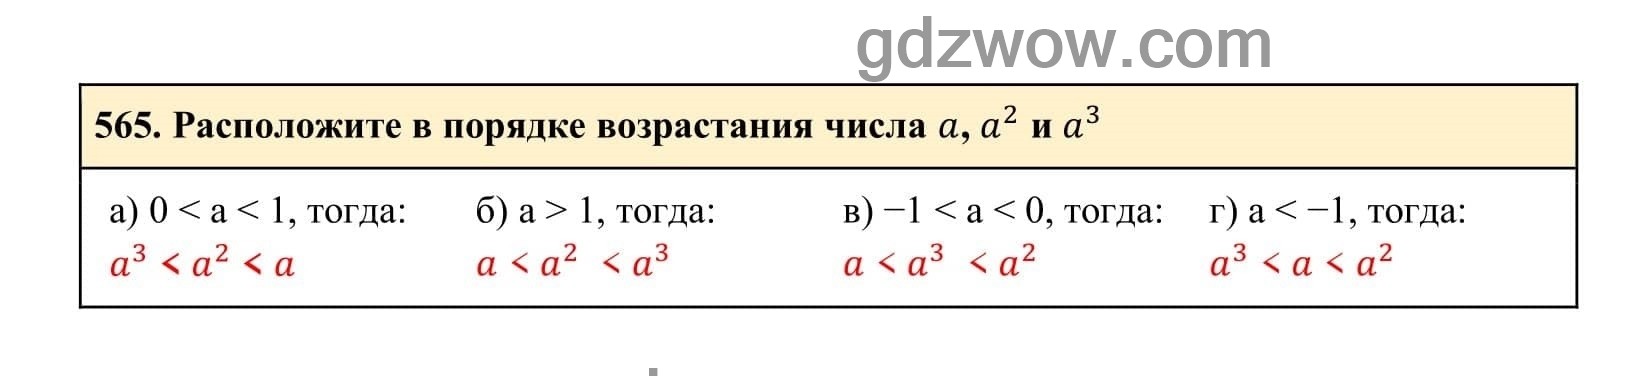 Упражнение 565 - ГДЗ по Алгебре 7 класс Учебник Макарычев (решебник) - GDZwow